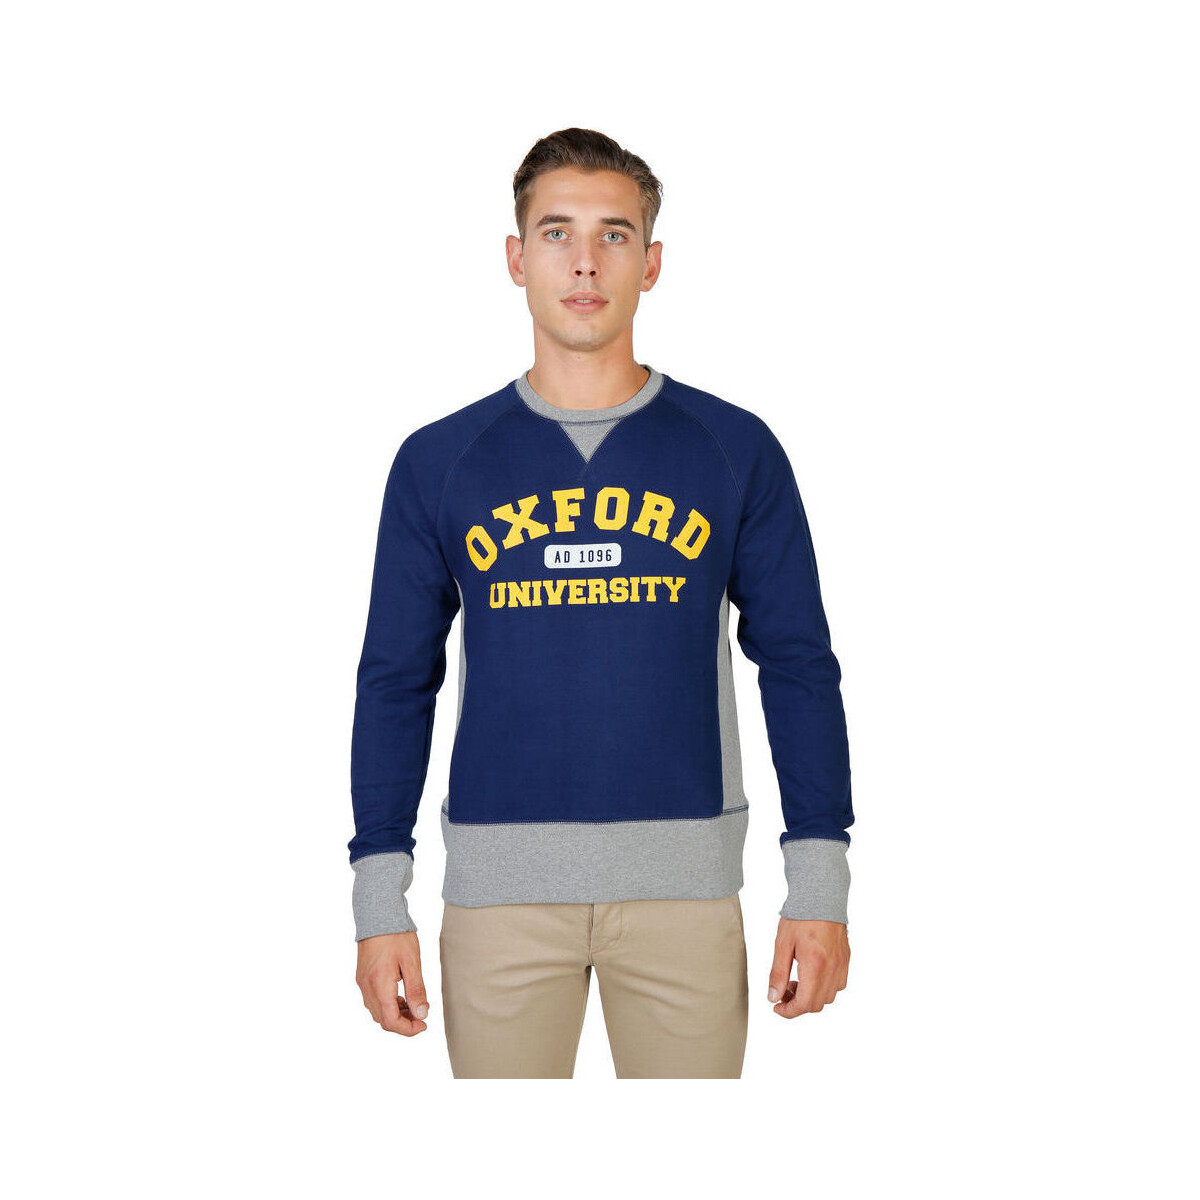 Textiel Heren Sweaters / Sweatshirts Oxford University - oxford-fleece-raglan Blauw